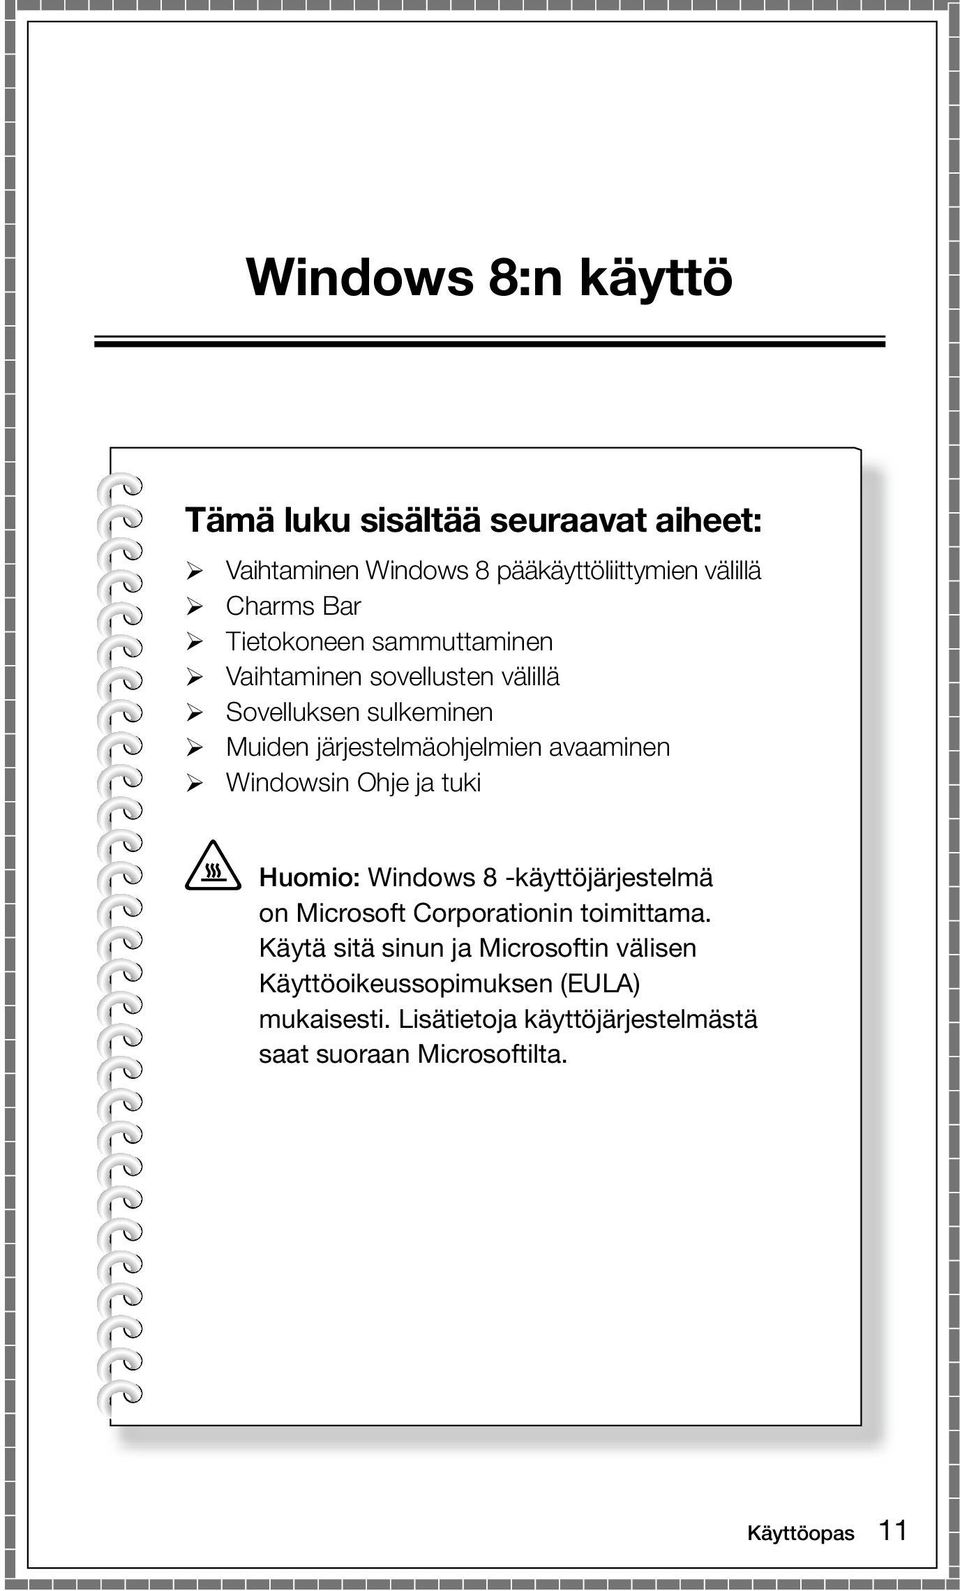 Windowsin Ohje ja tuki Huomio: Windows 8 -käyttöjärjestelmä on Microsoft Corporationin toimittama.